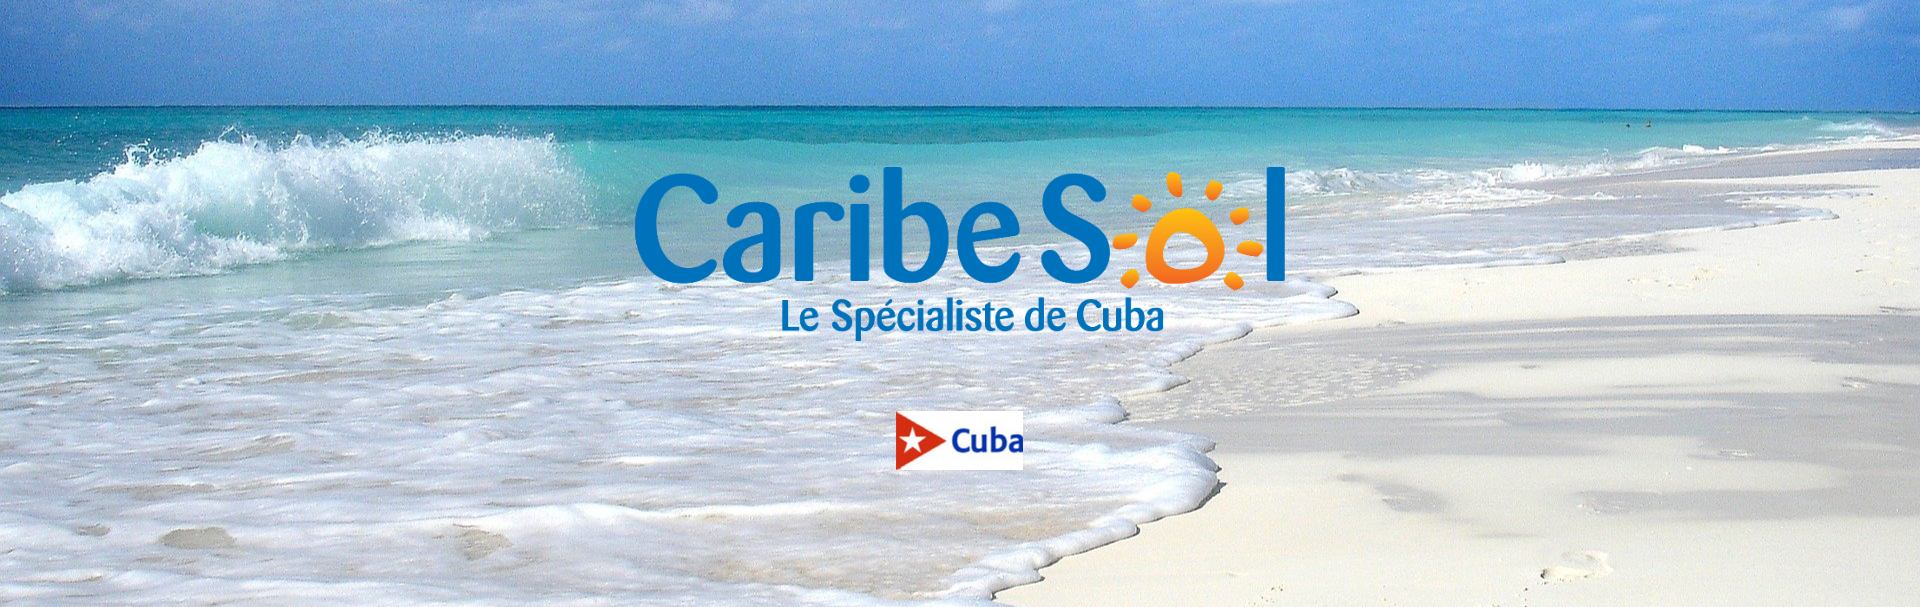 voyage caribe sol cuba